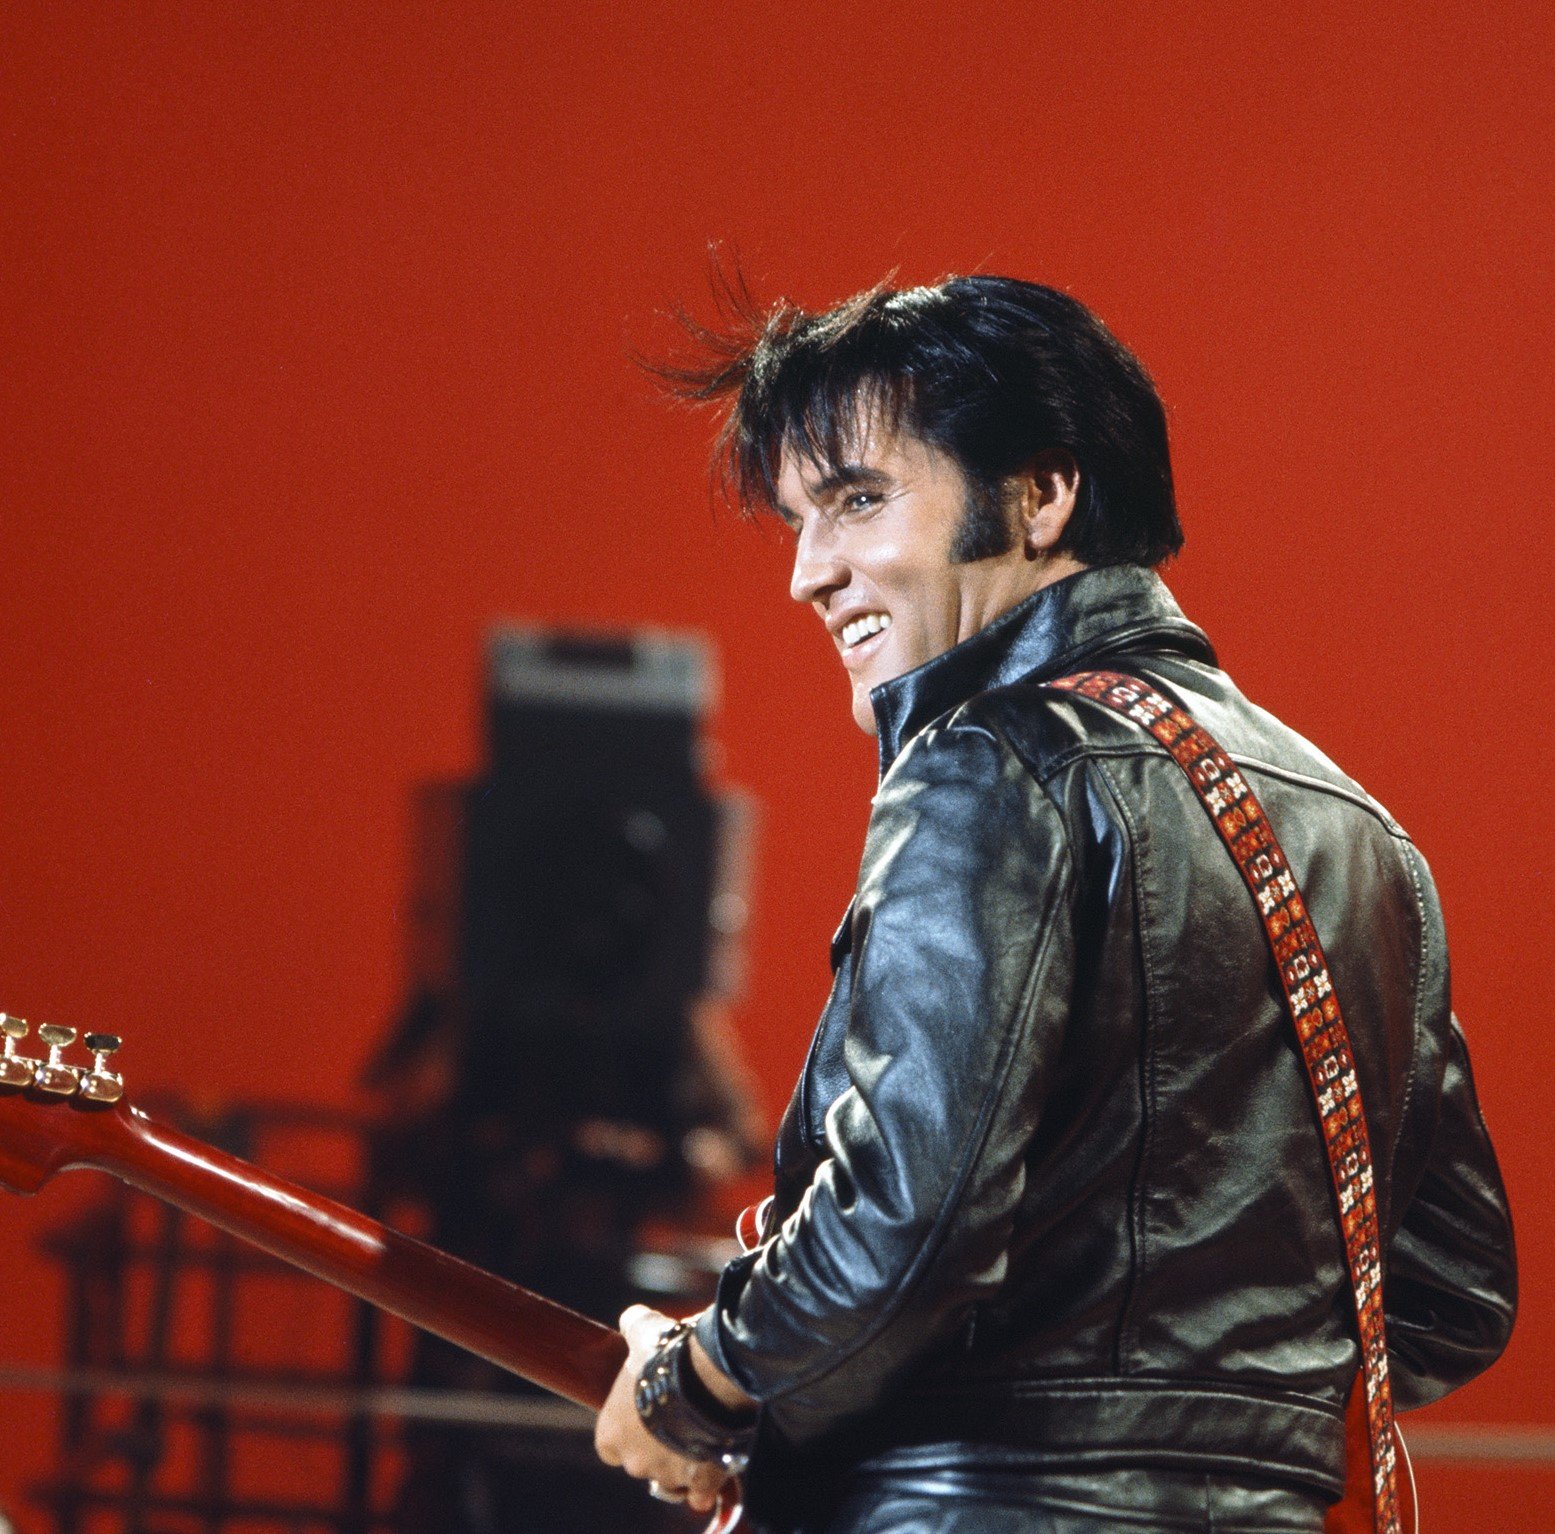 "Love Me Tender" singer Elvis Presley wearing black leather